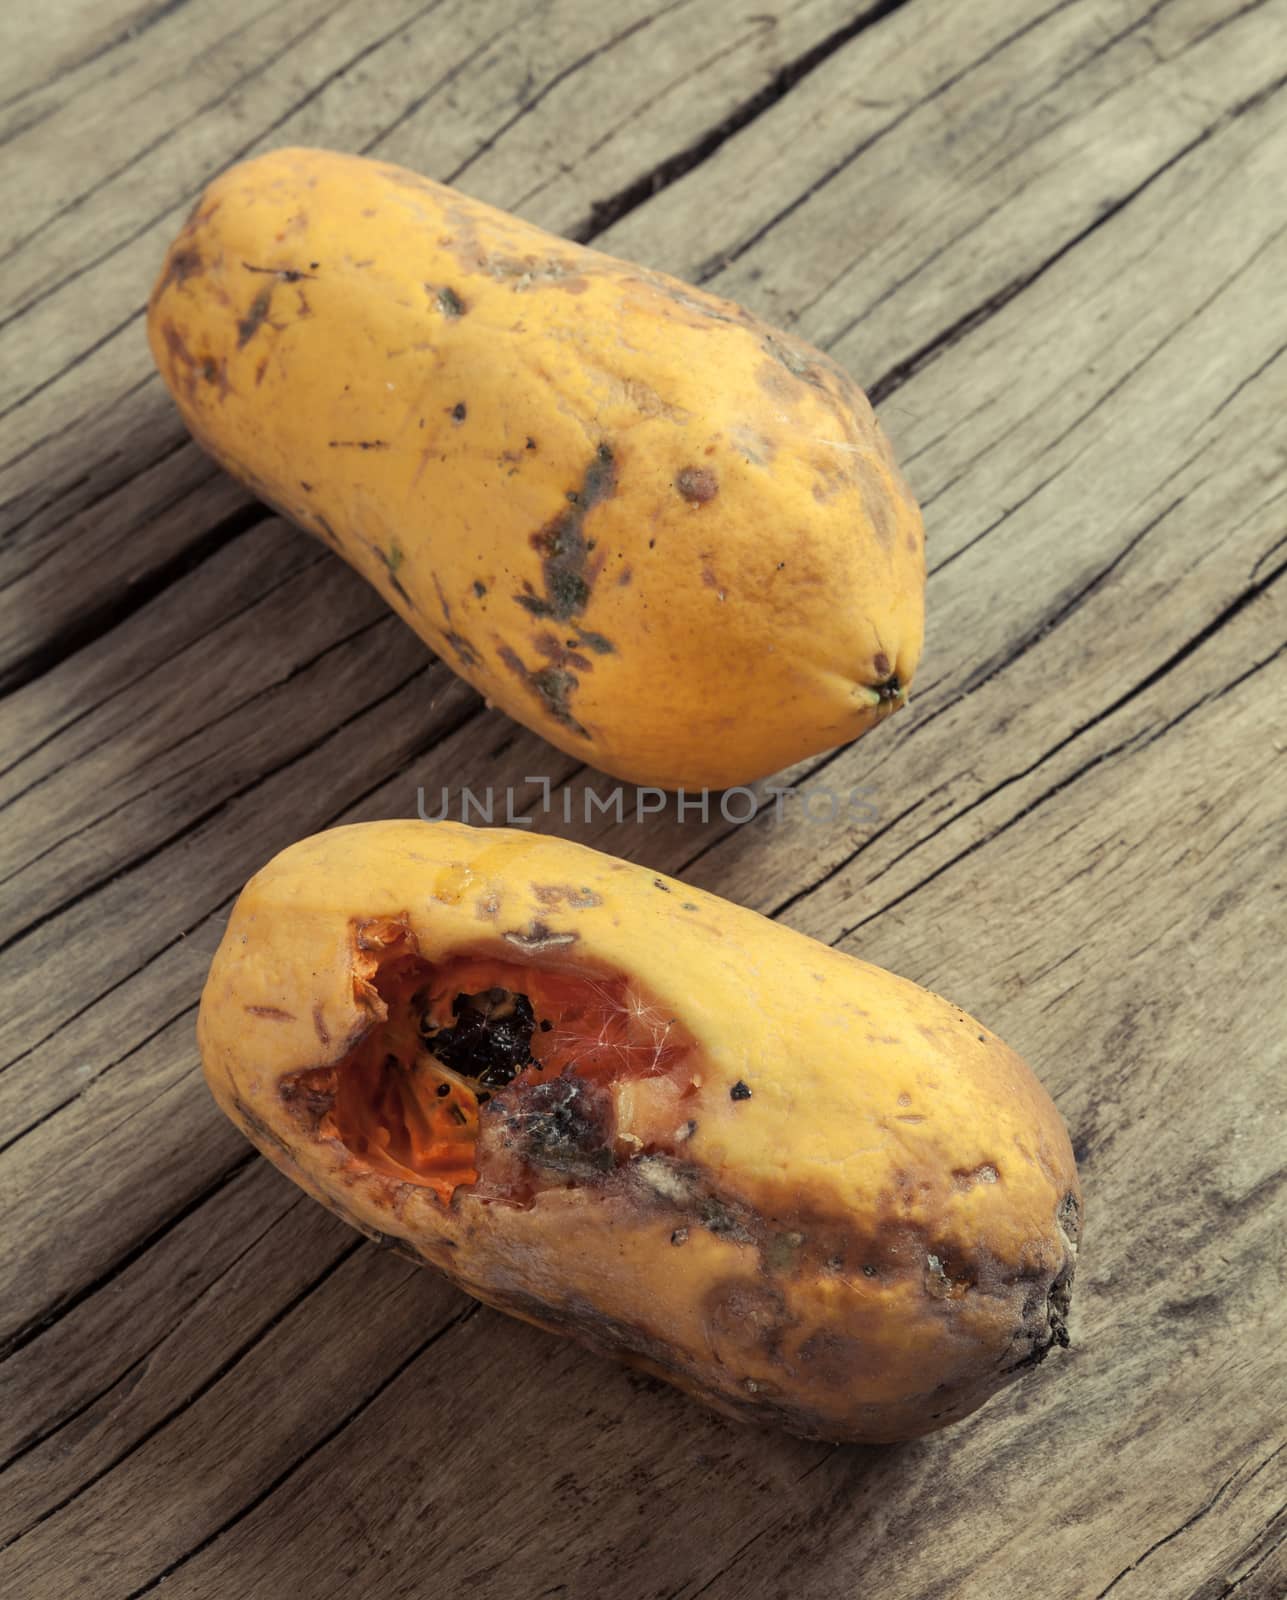 Closeup of moldy papaya fruit on wood background